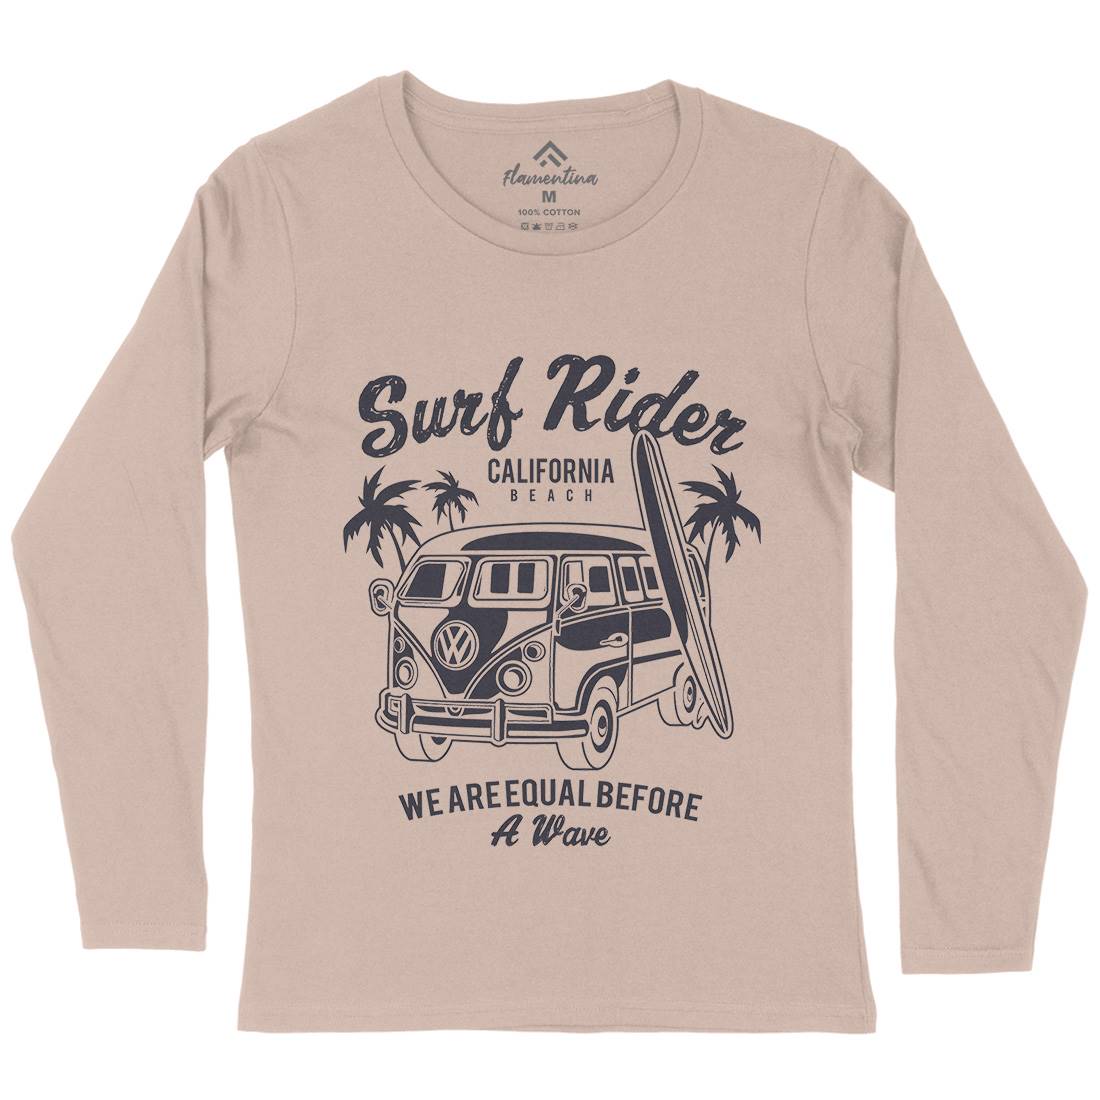 Rider Womens Long Sleeve T-Shirt Surf A169